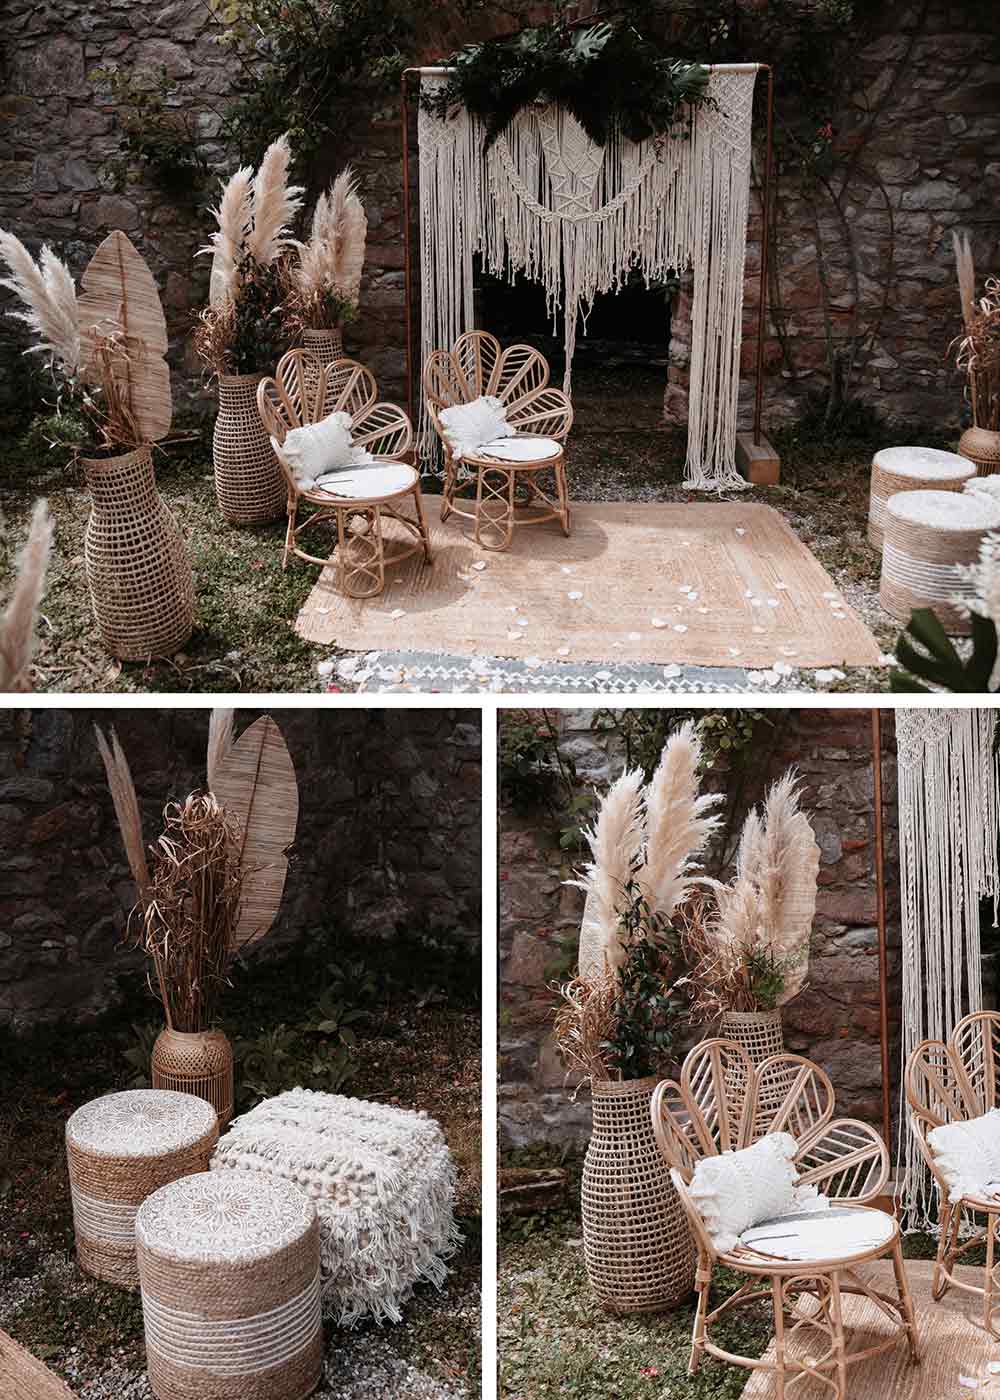 Die Boho Elemente ziehen sich durch die gesamte Dekoration der Hochzeit. Geflochtene Stühle für die Trauung, Pampasgras in hohen Vasen, ein Traubogen mit Makramee verziert und ein geflochtener Teppich geben ein harmonisches Gesamtbild.